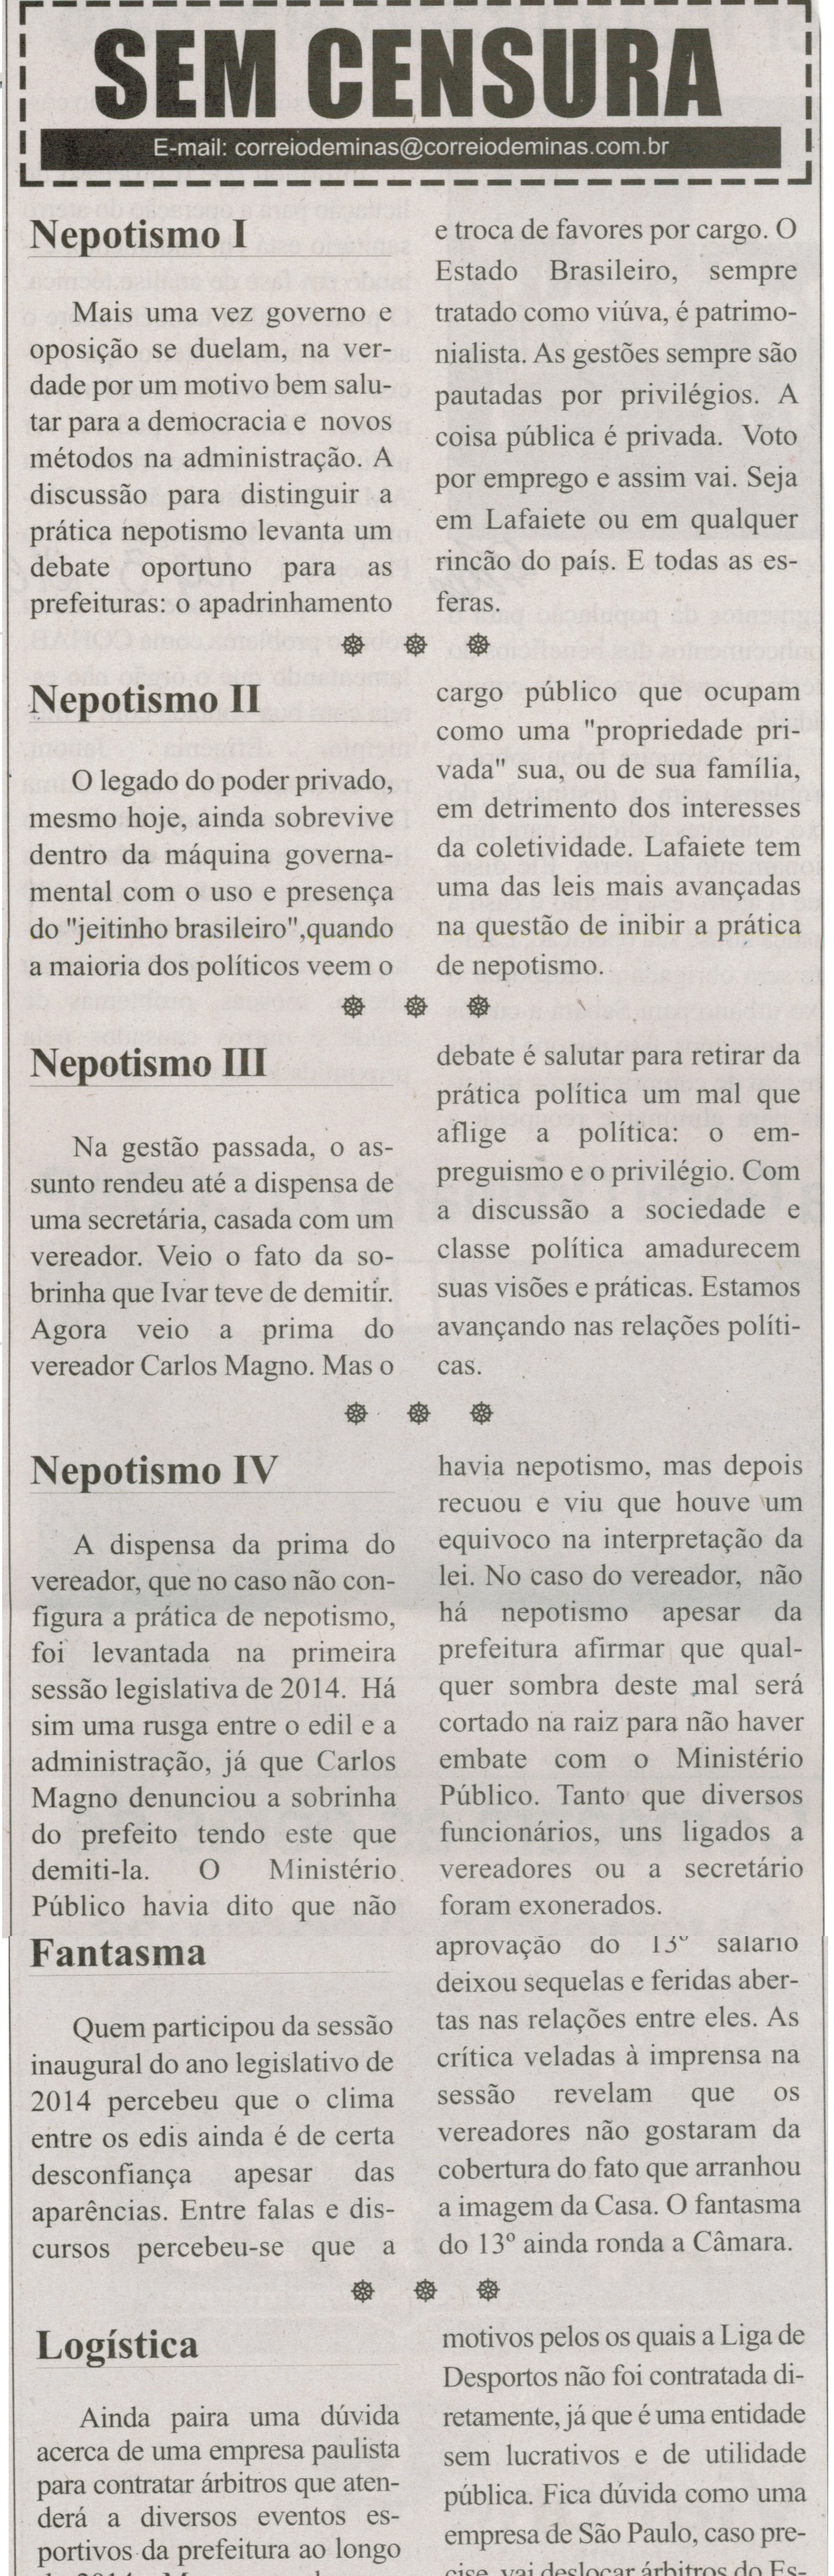 Nepotismo I; Nepotismo II; Nepotismo III; Nepotismo IV; Fantasma. Correio de Minas, Conselheiro Lafaiete, 08 fev. 2014, Sem Censura, p. 3.